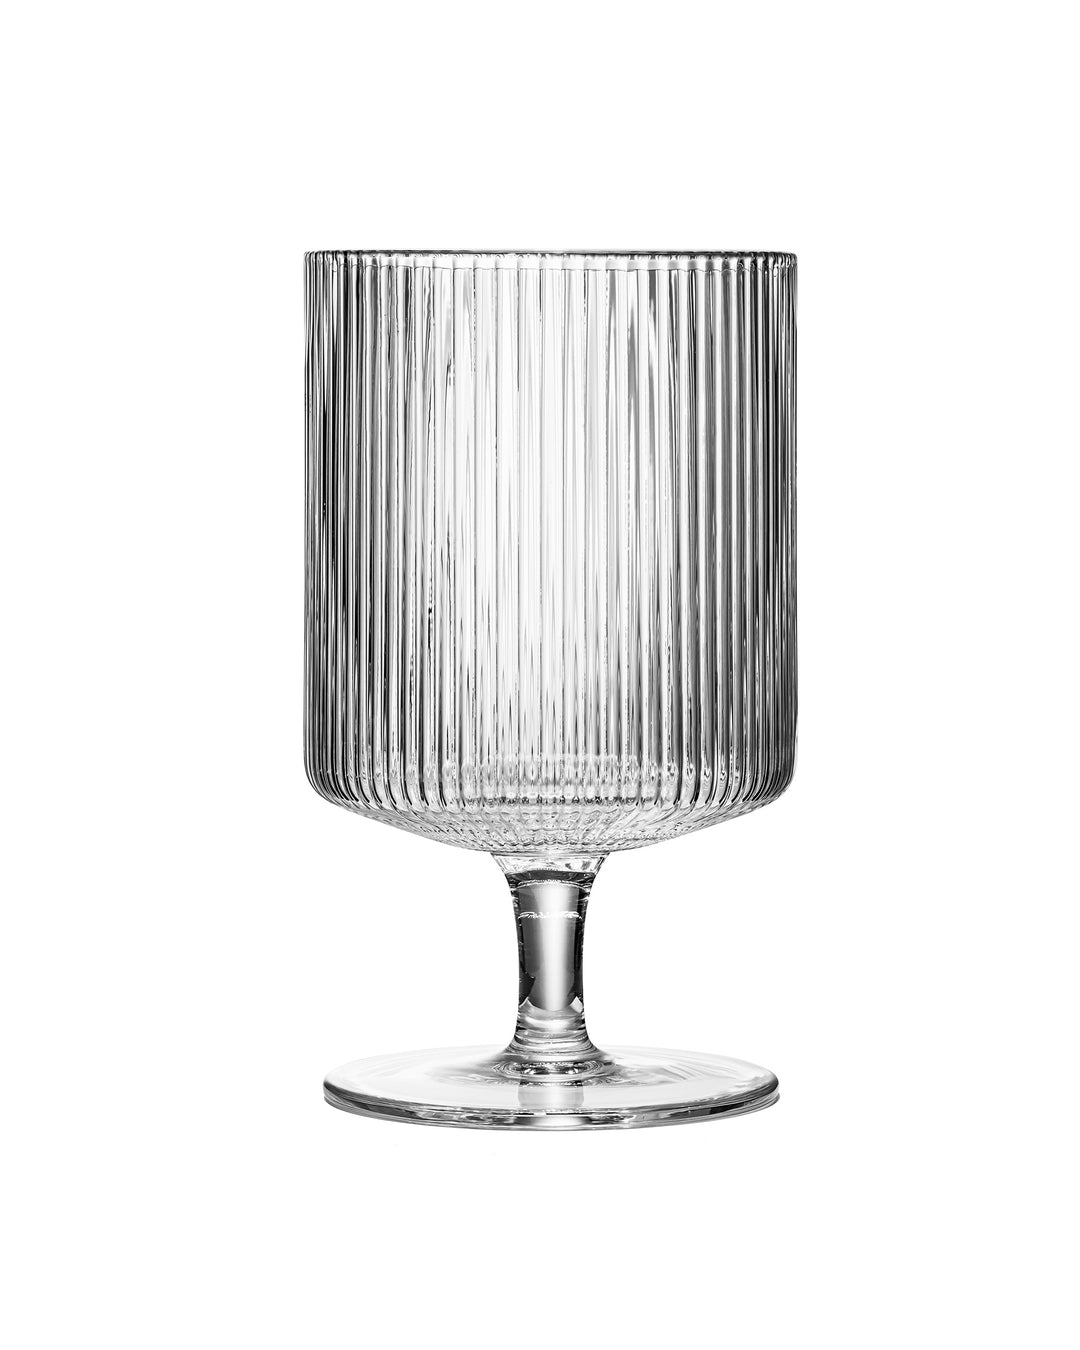 Vintage Art Deco Ribbed Goblet Cocktail Glasses with Stem | Set of 4 | 10 oz